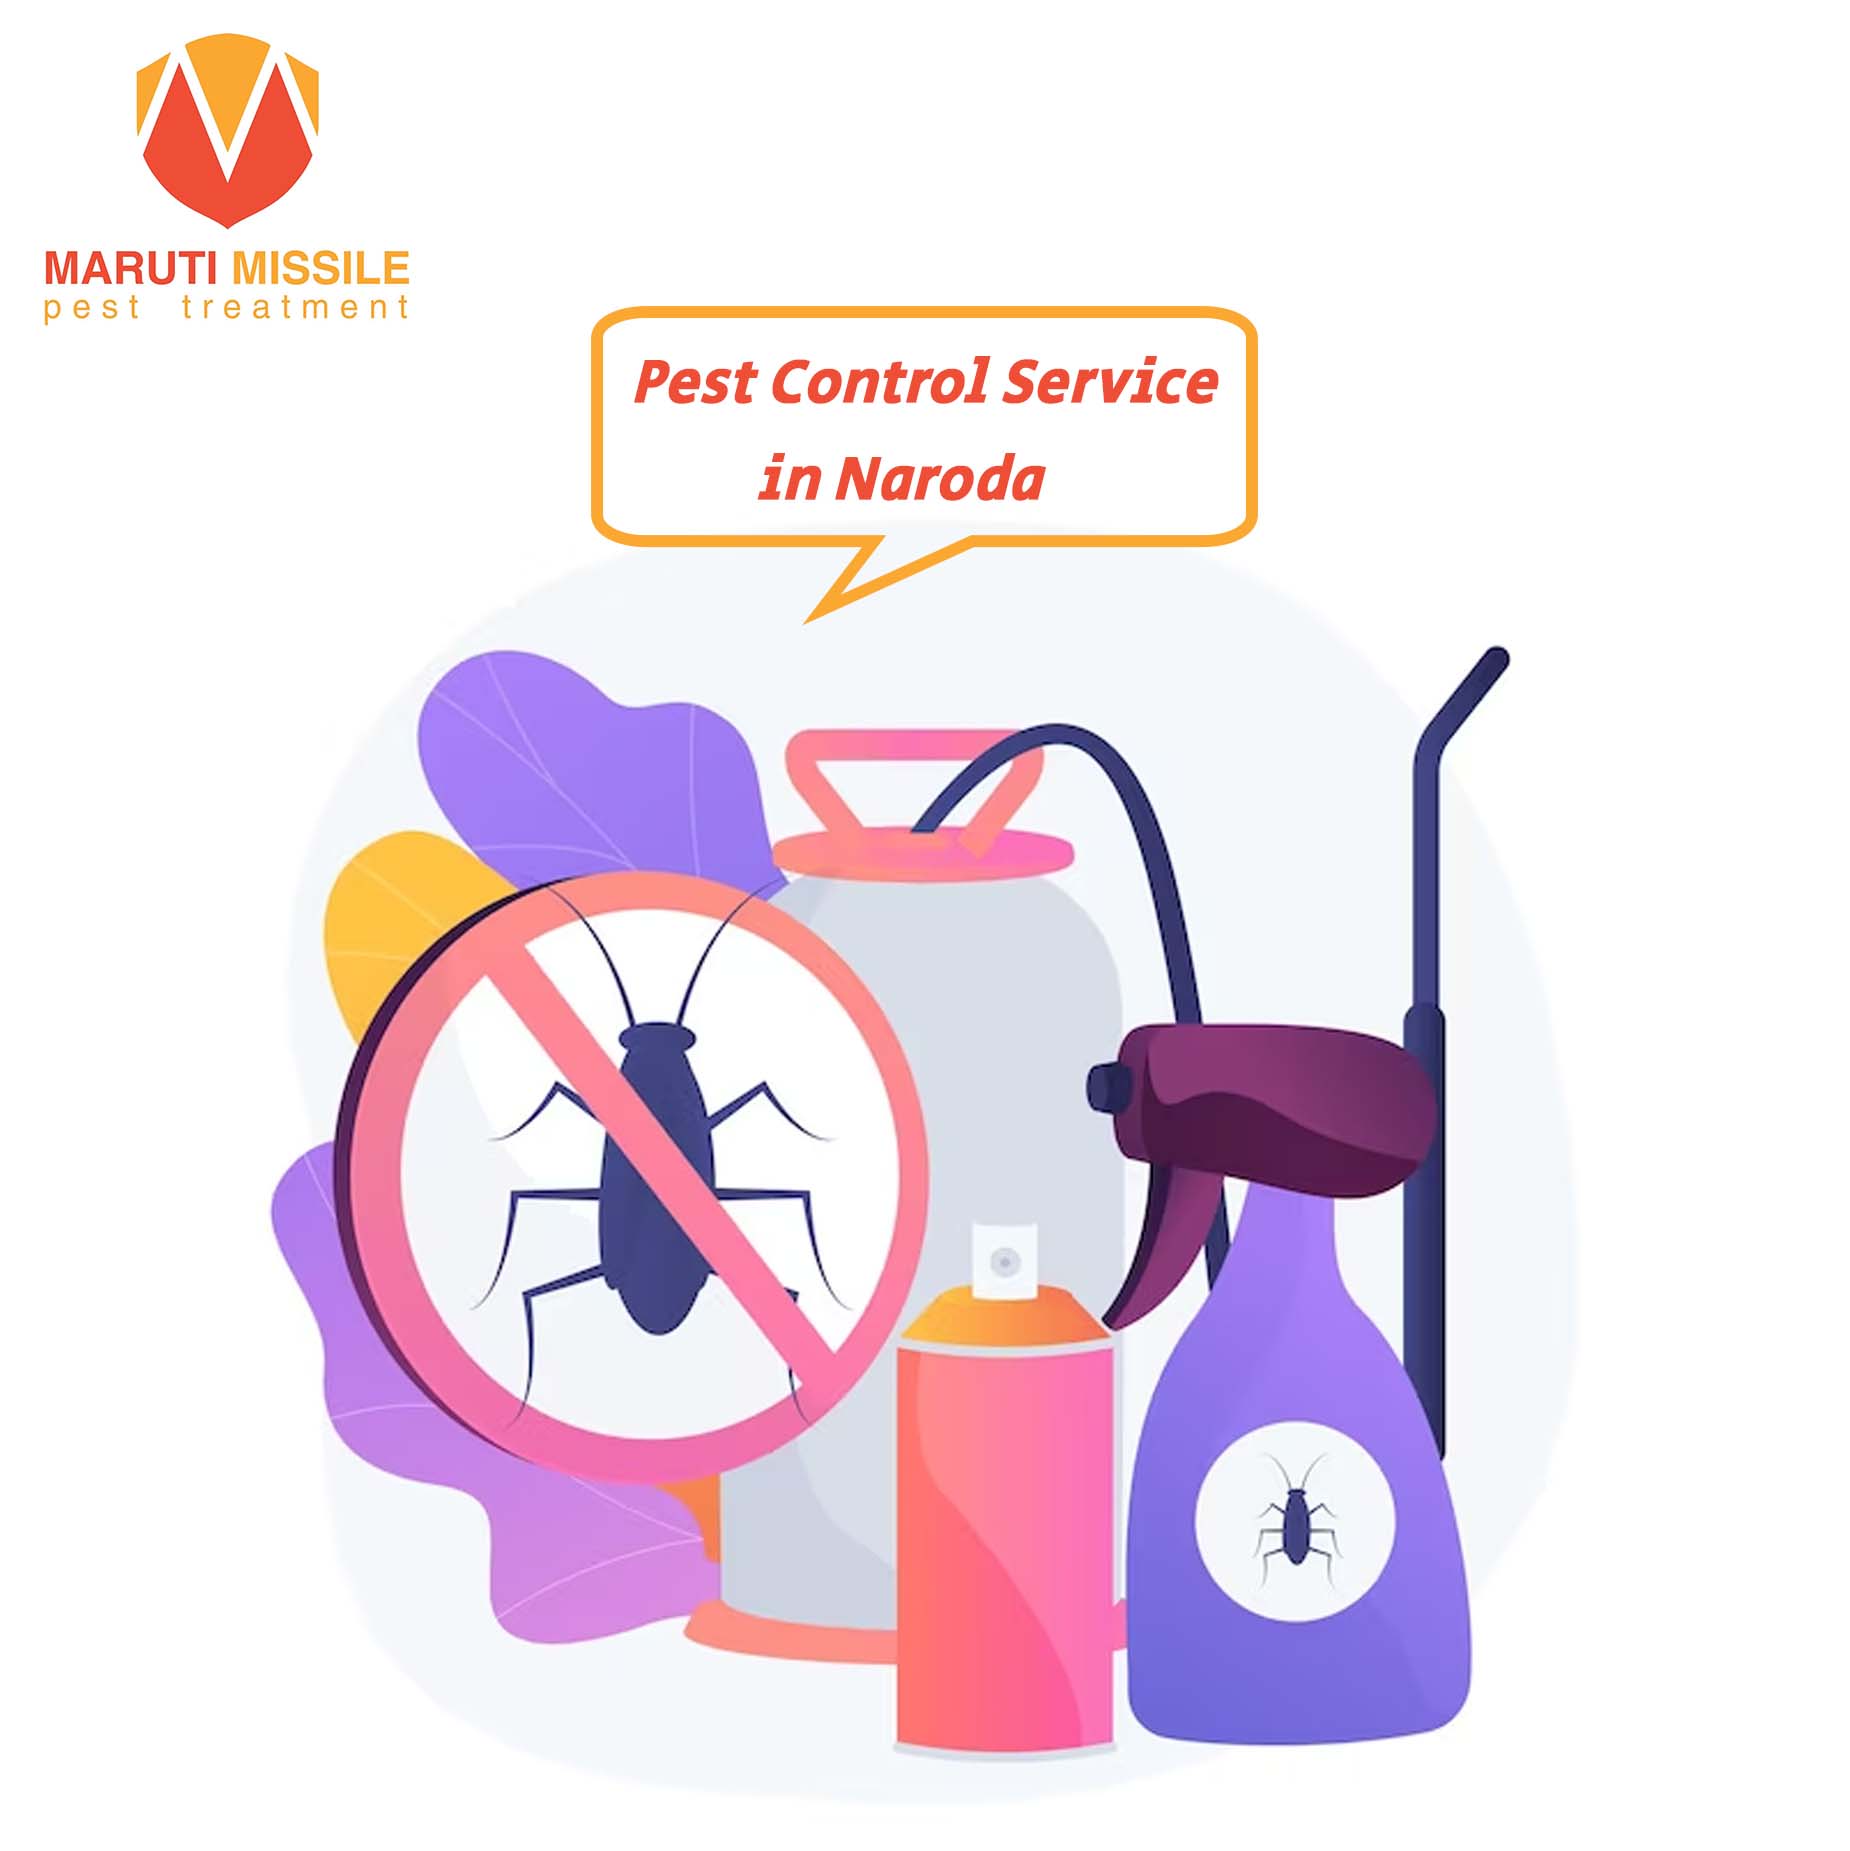 Pest Control Service in Naroda